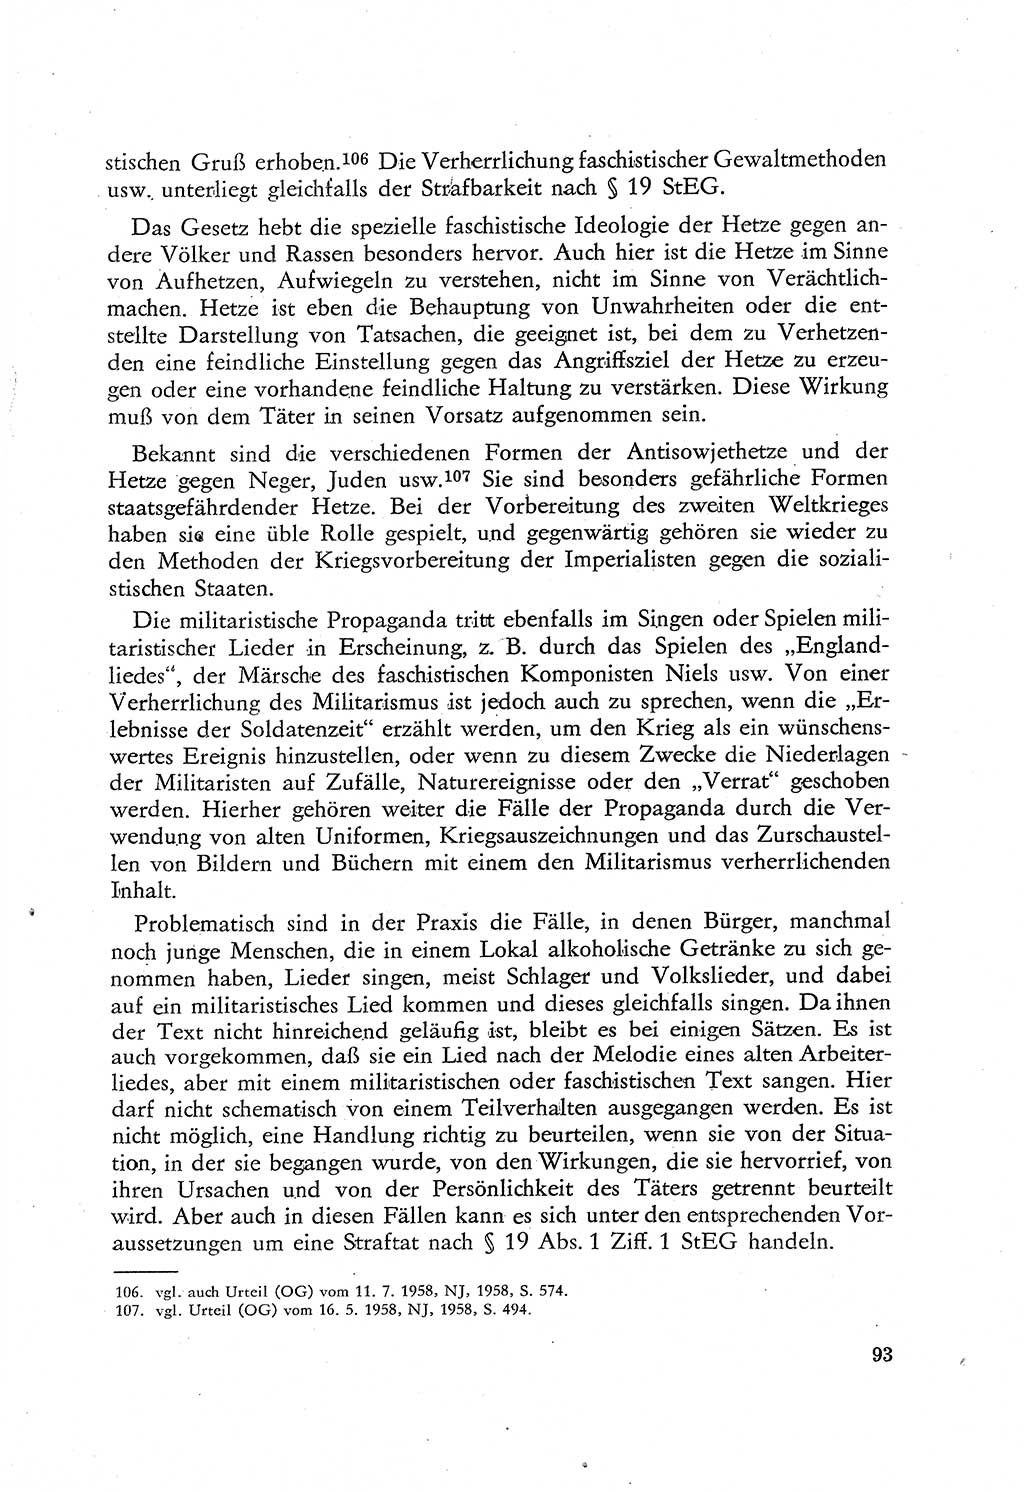 Beiträge zum Strafrecht [Deutsche Demokratische Republik (DDR)], Staatsverbrechen 1959, Seite 93 (Beitr. Strafr. DDR St.-Verbr. 1959, S. 93)